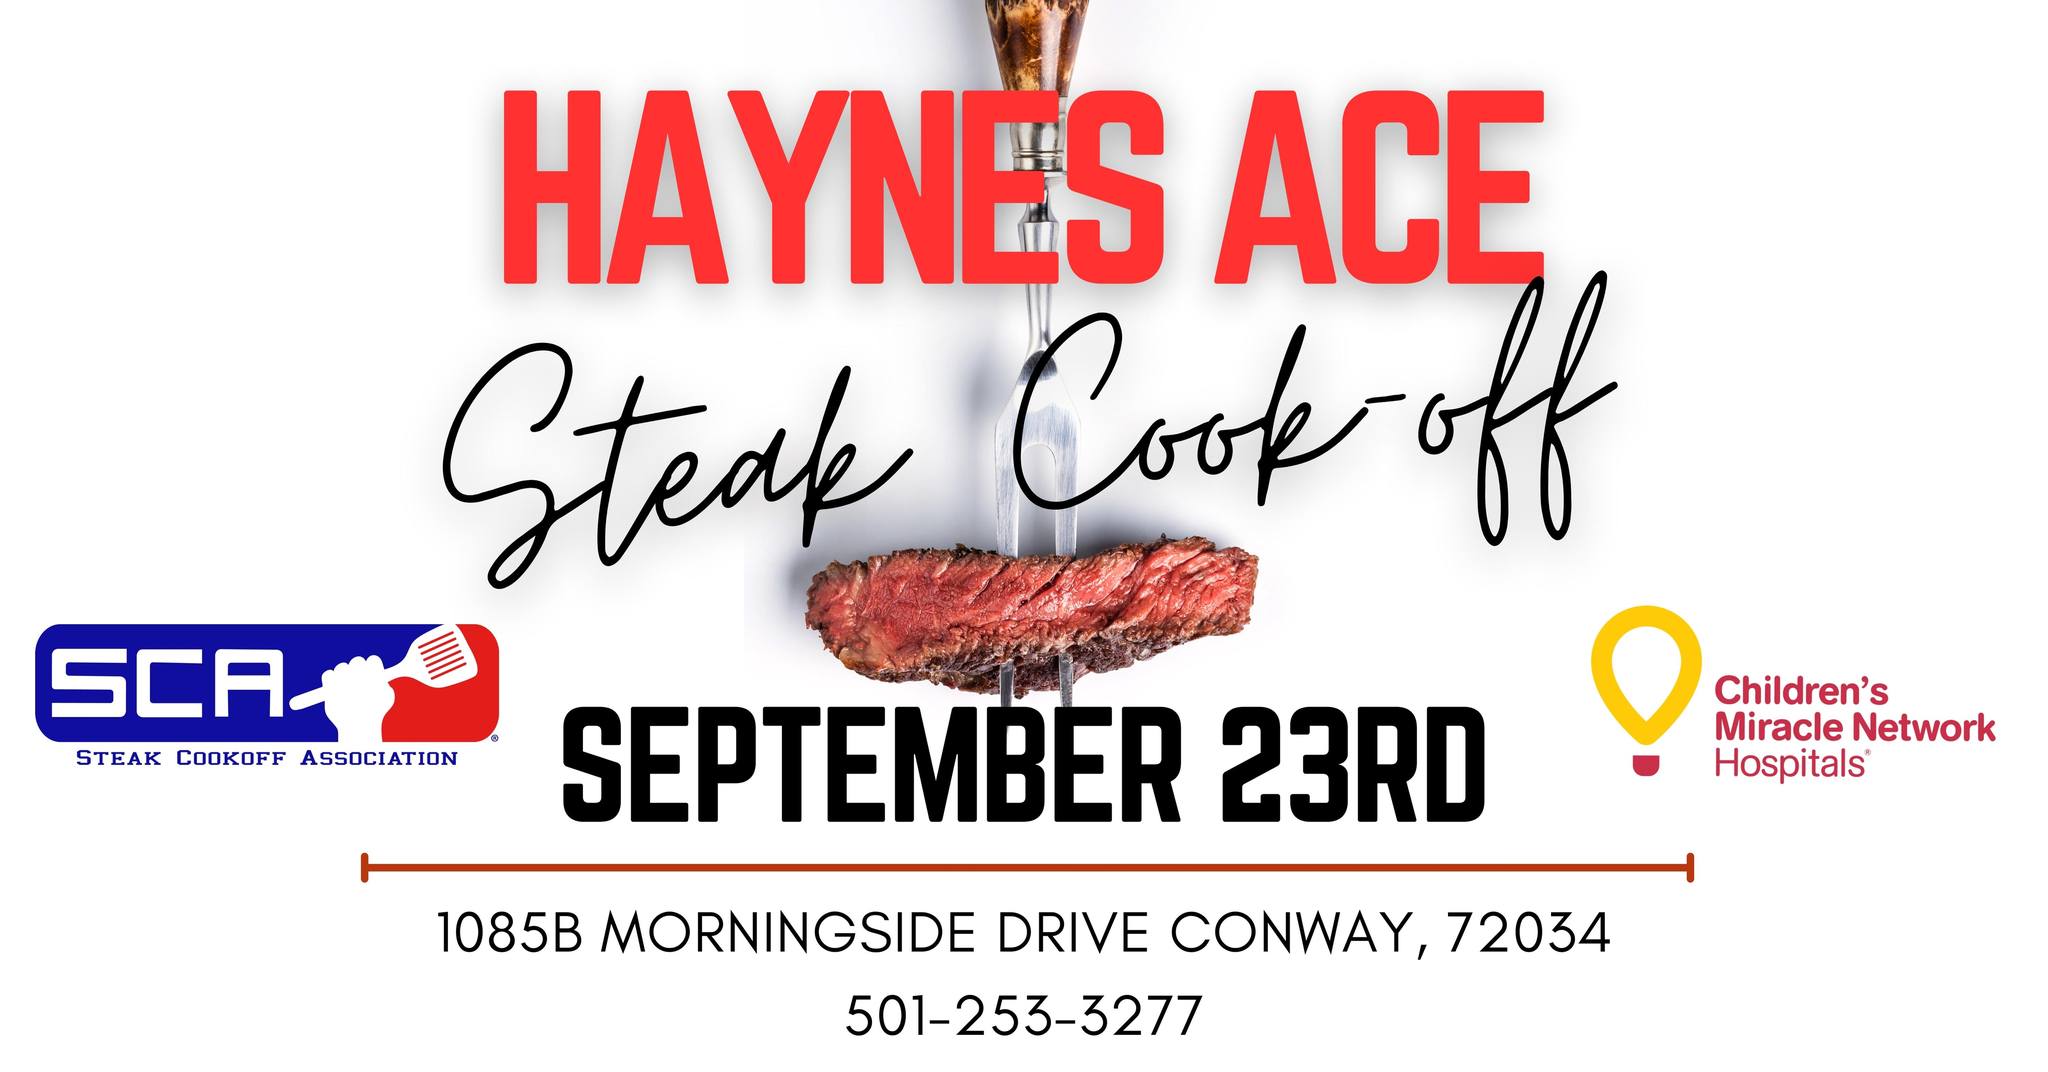 Haynes Ace Steak Cook-Off